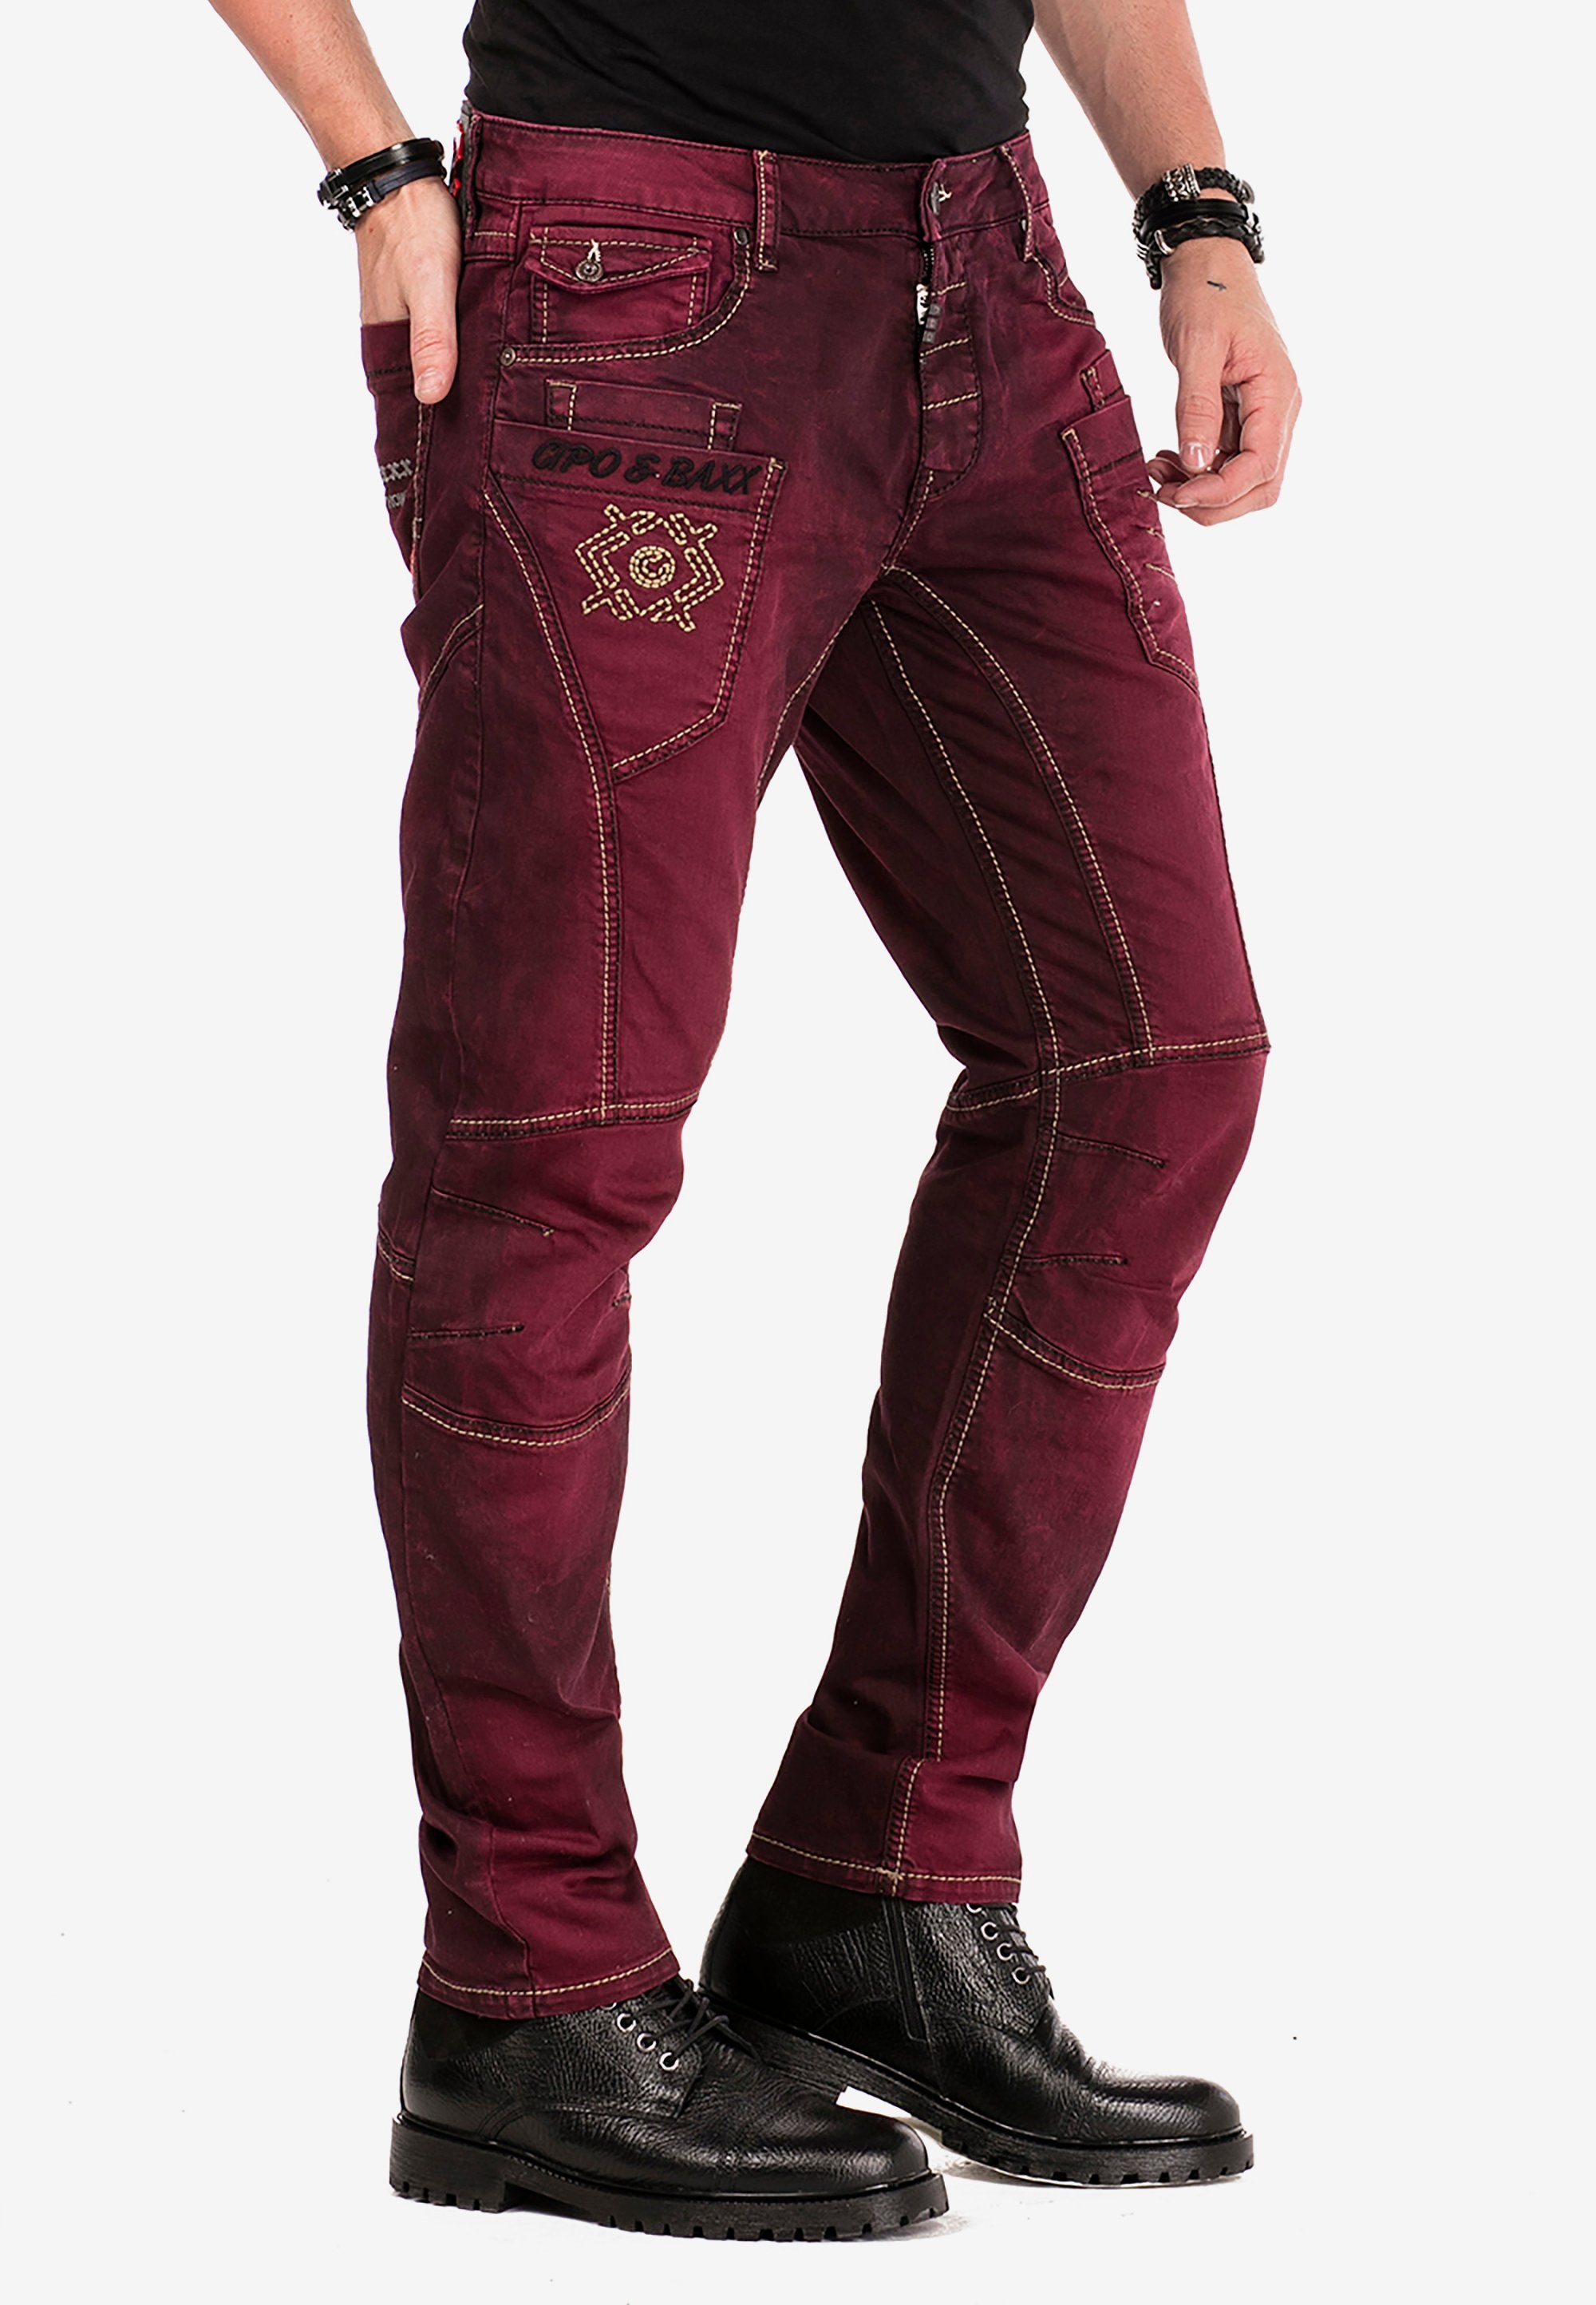 Herren Jeans in rot online kaufen | OTTO